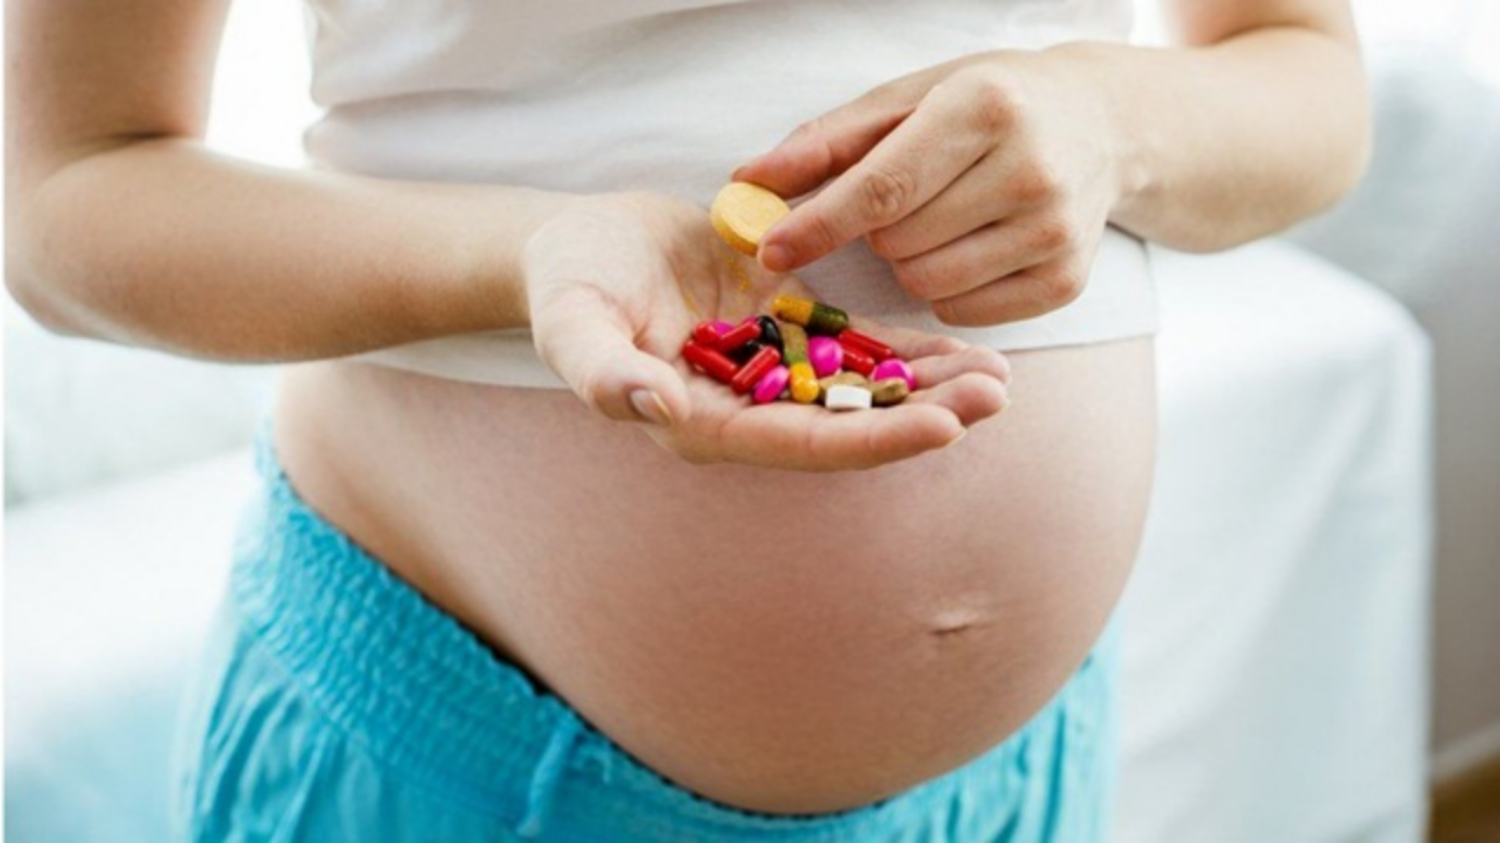 Thực phẩm chức năng khi mang thai: Chất nào nên uống? Chất nào nên tránh?